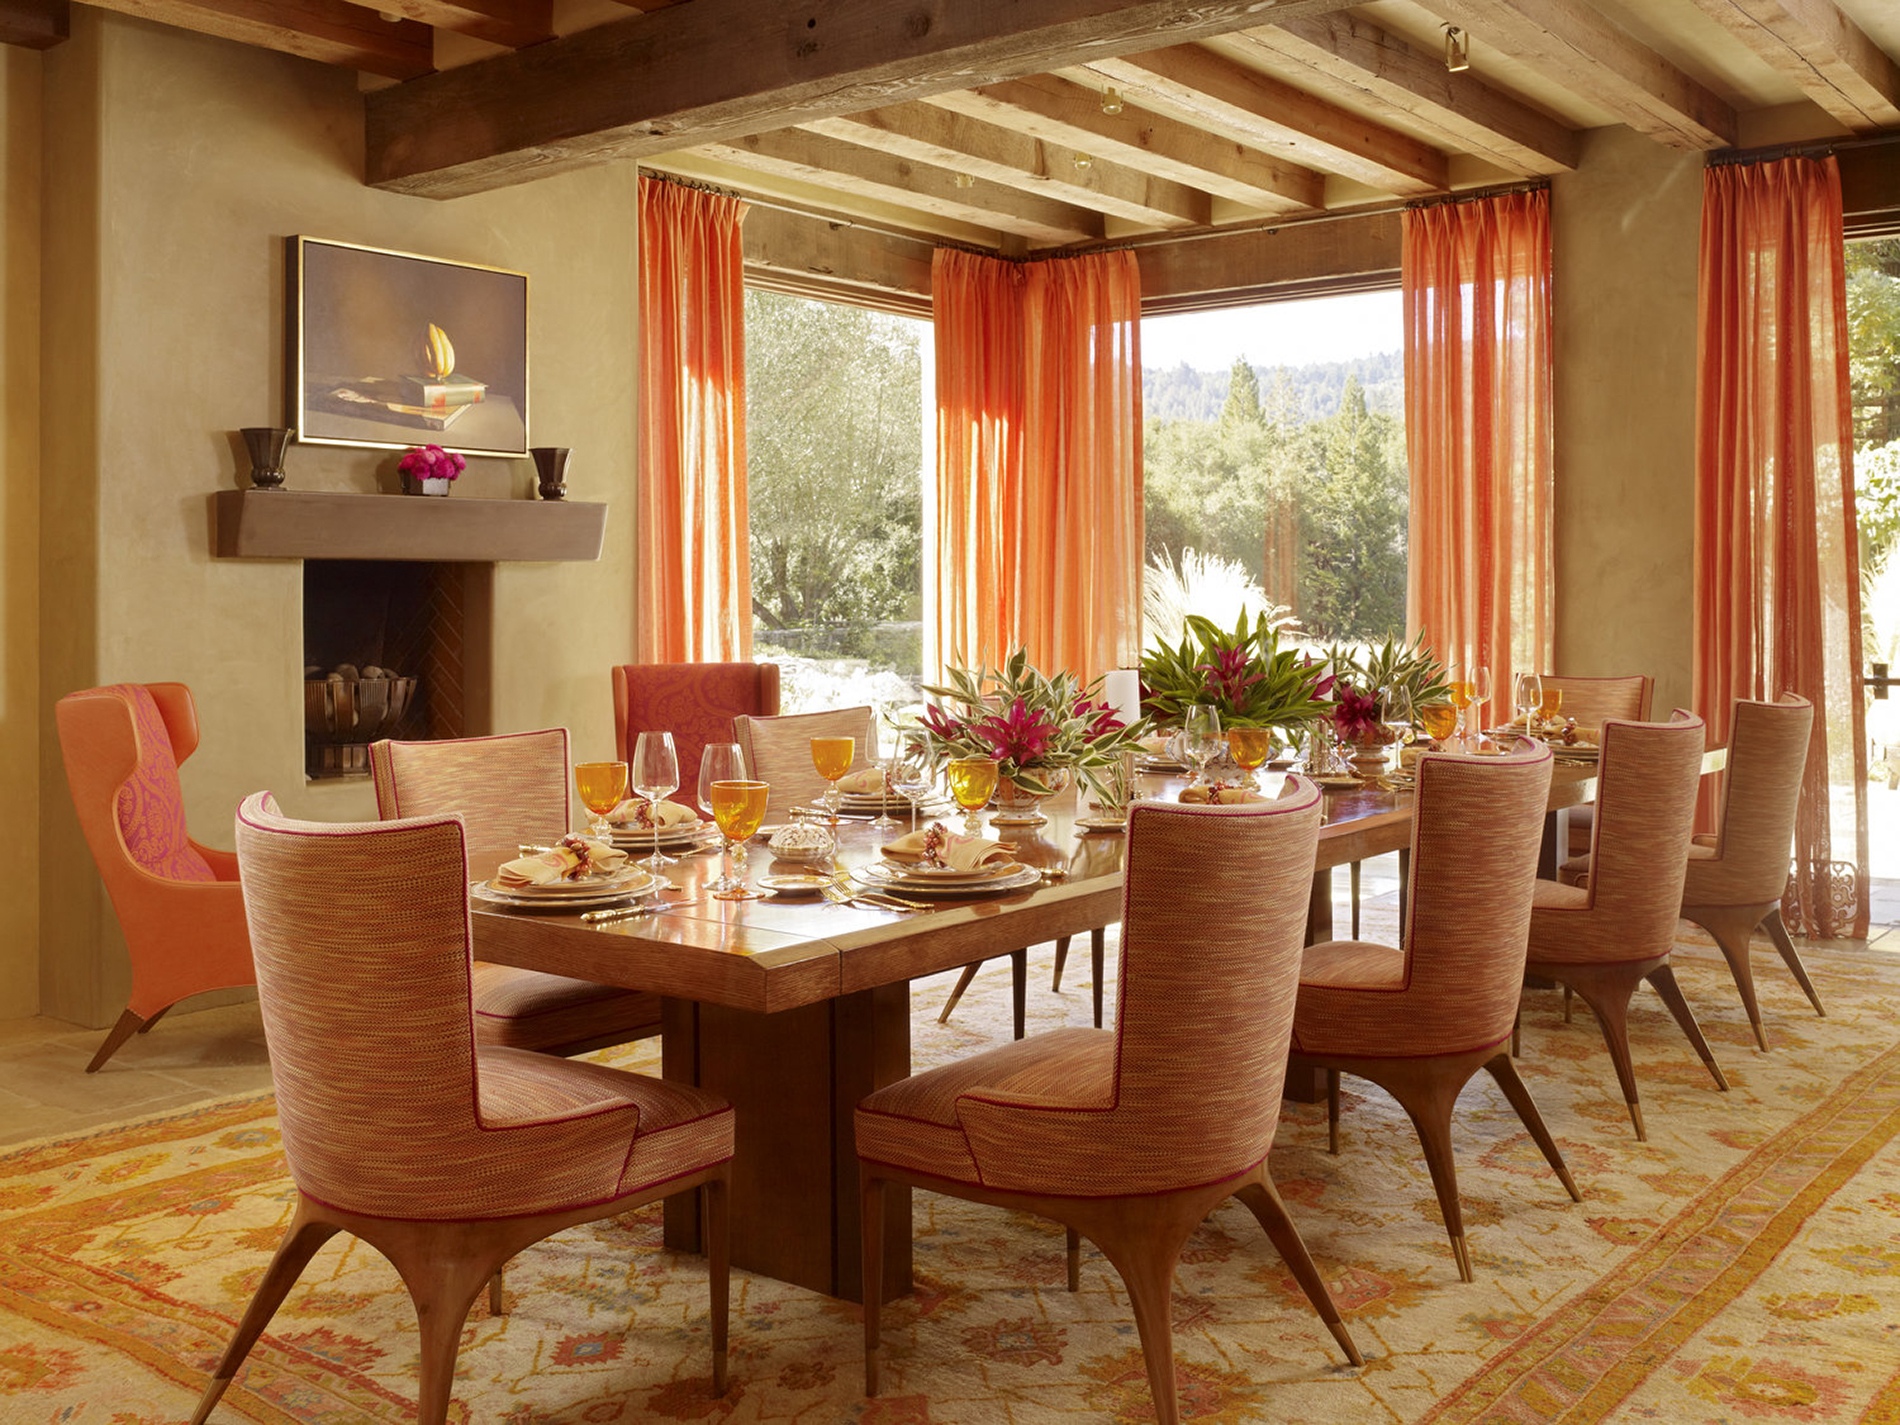 Và cuối cùng, một phòng ăn ấm áp tuyệt đối khi sử dụng toàn bộ gam màu cam và gỗ sáng màu để trang trí nội thất: Từ thảm trải sàn, ghế ăn, rèm cửa,... cho đến màu của nước uống cũng không phải là ngoại lệ.